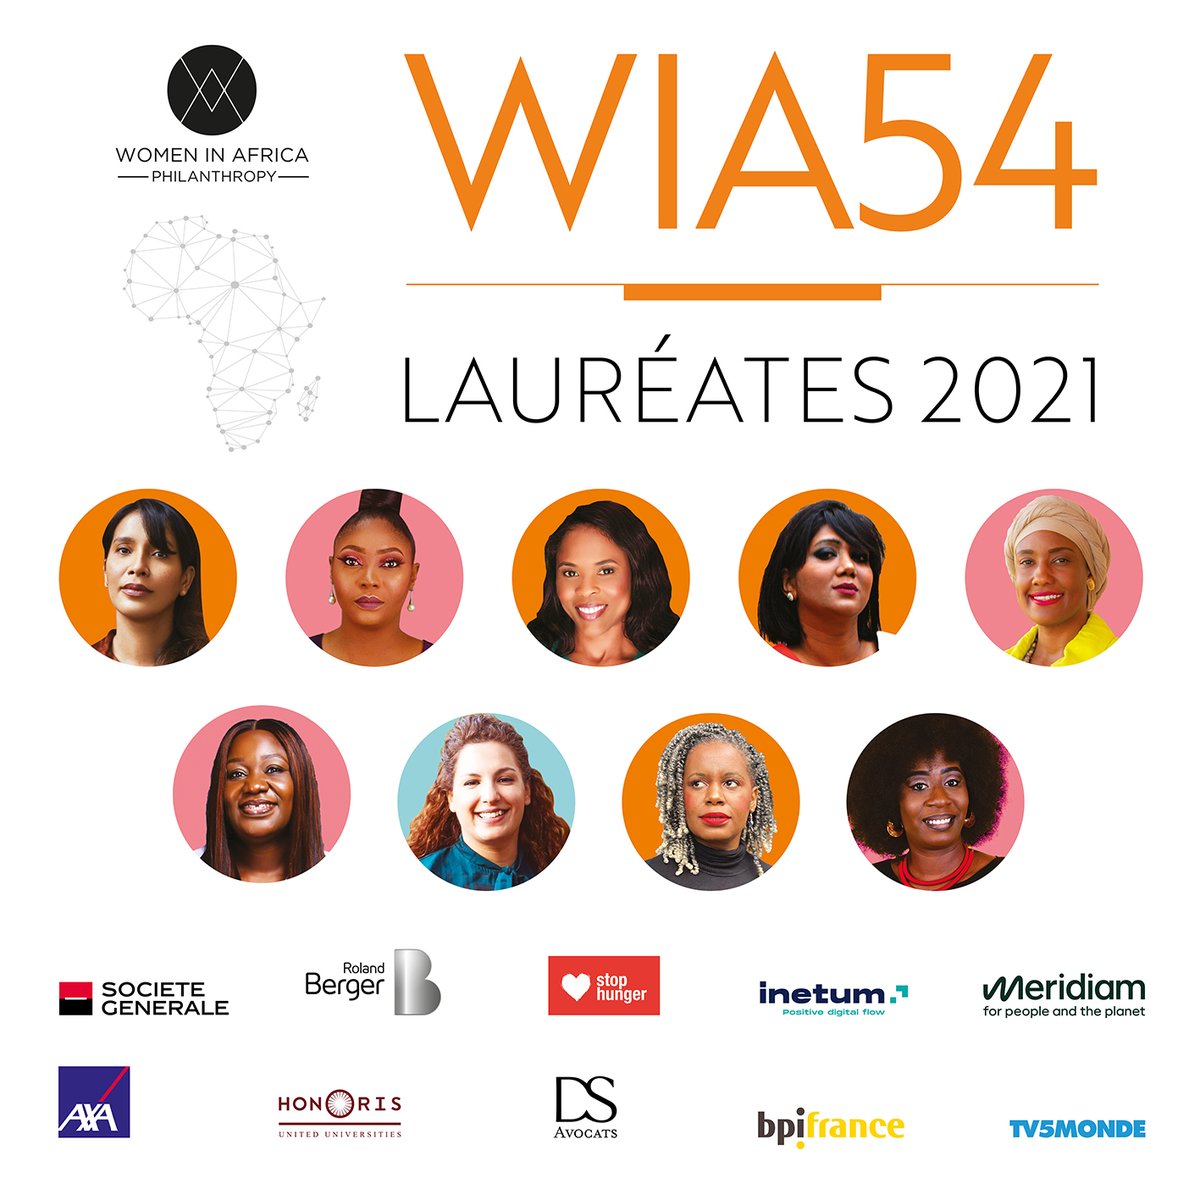 [Annonce des lauréates WIA54] Cette année, après un bootcamp de formation avec les 540 finalistes du programme #WIA54, nous avons l’honneur de vous dévoiler les lauréates WIA54 de la promotion 2021 ! Découvrir la promotion 2021 ➡️ bit.ly/3nCJiHL #WIA